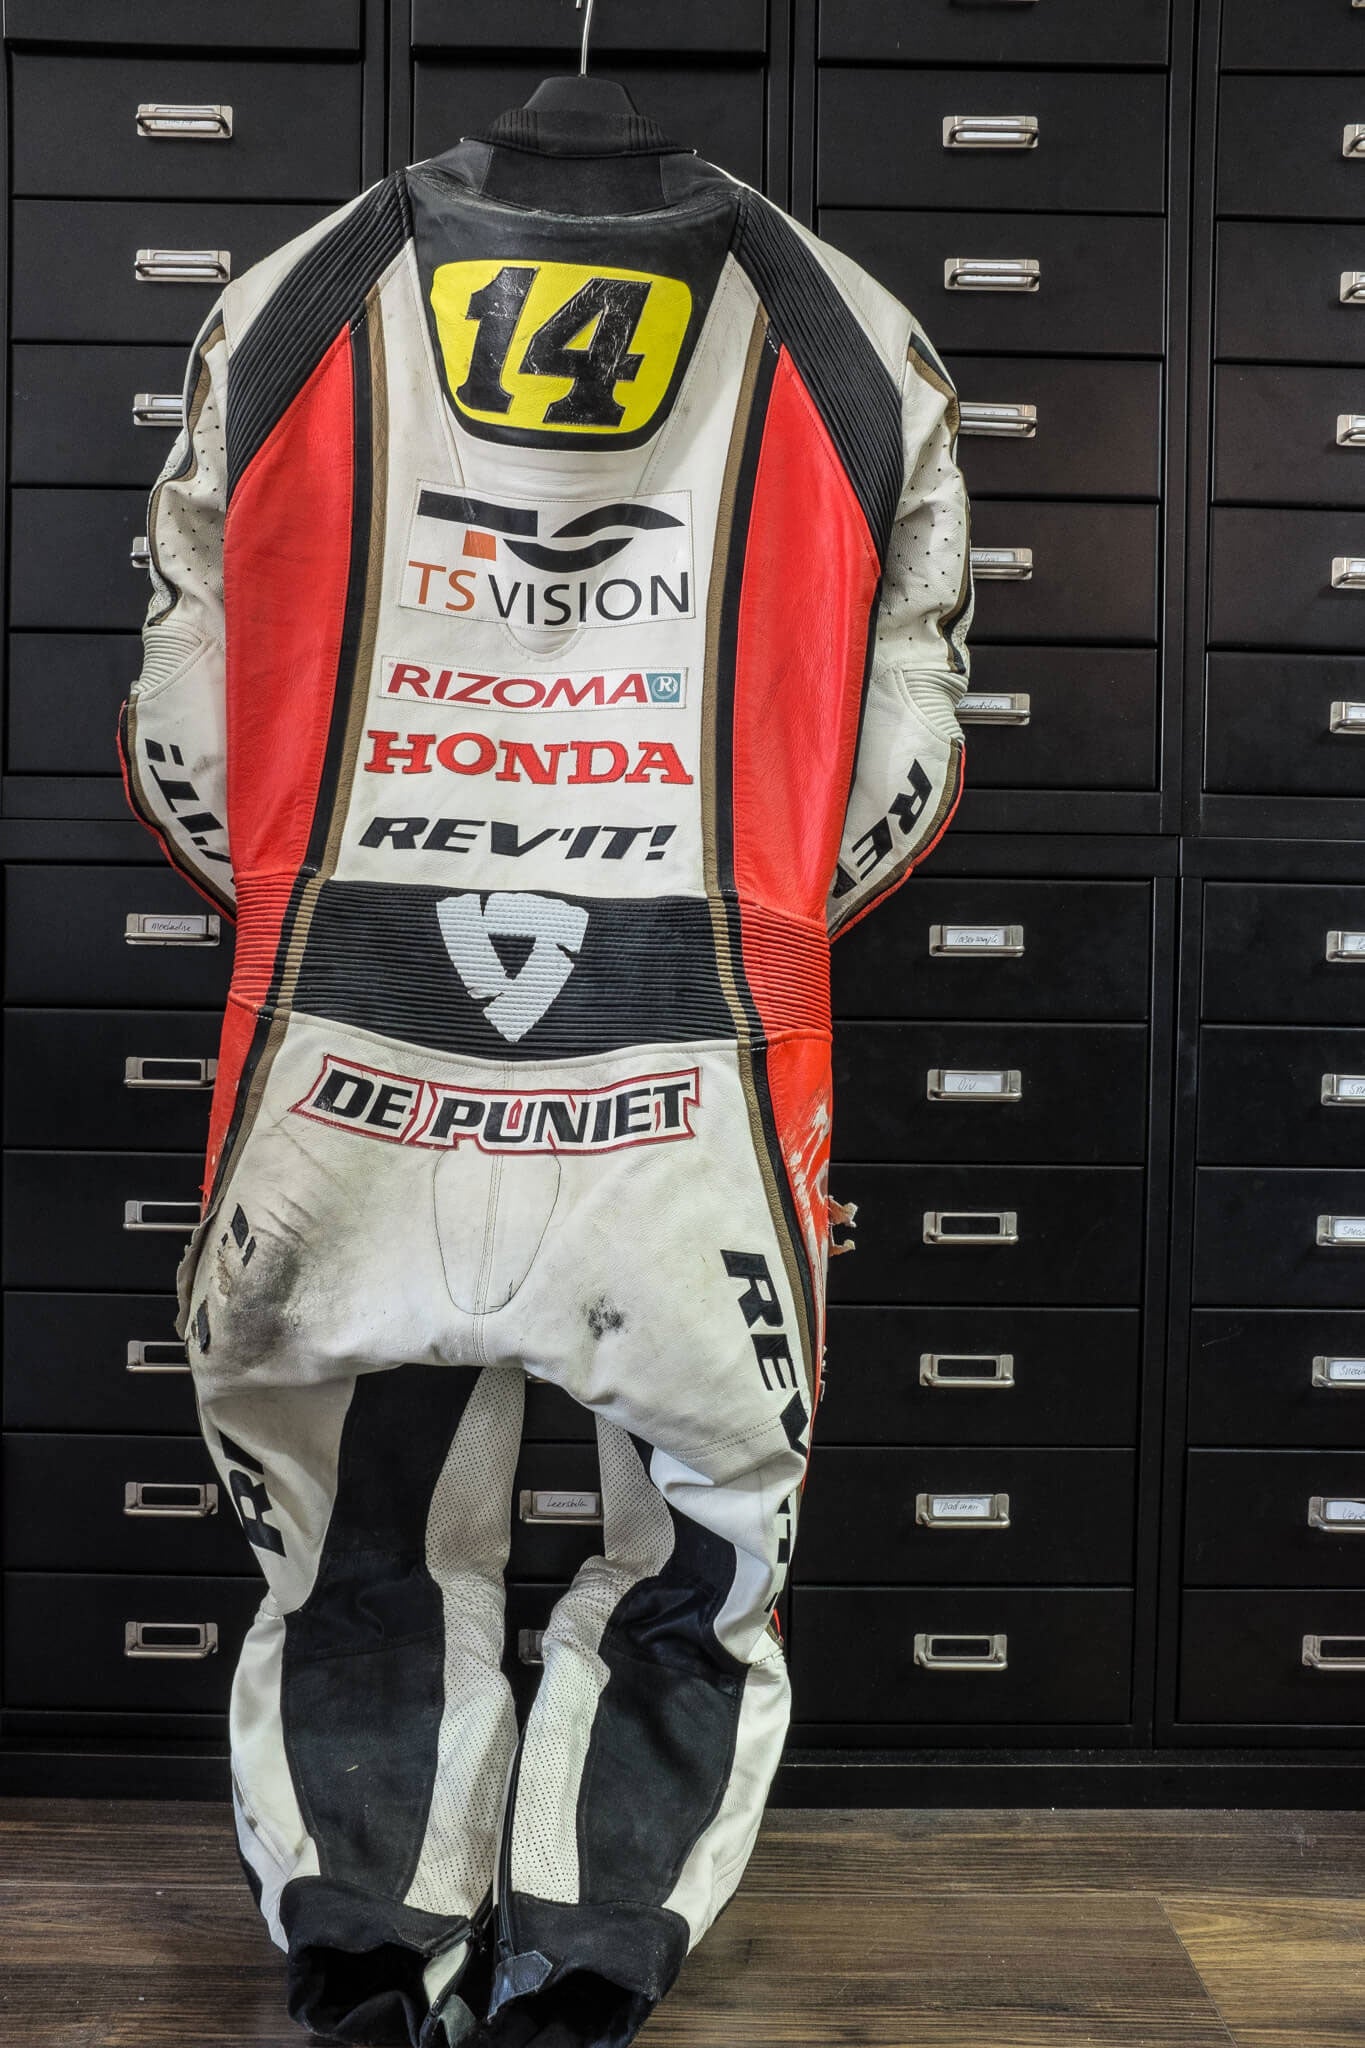 The 2008 MotoGP suit of Randy de Puniet